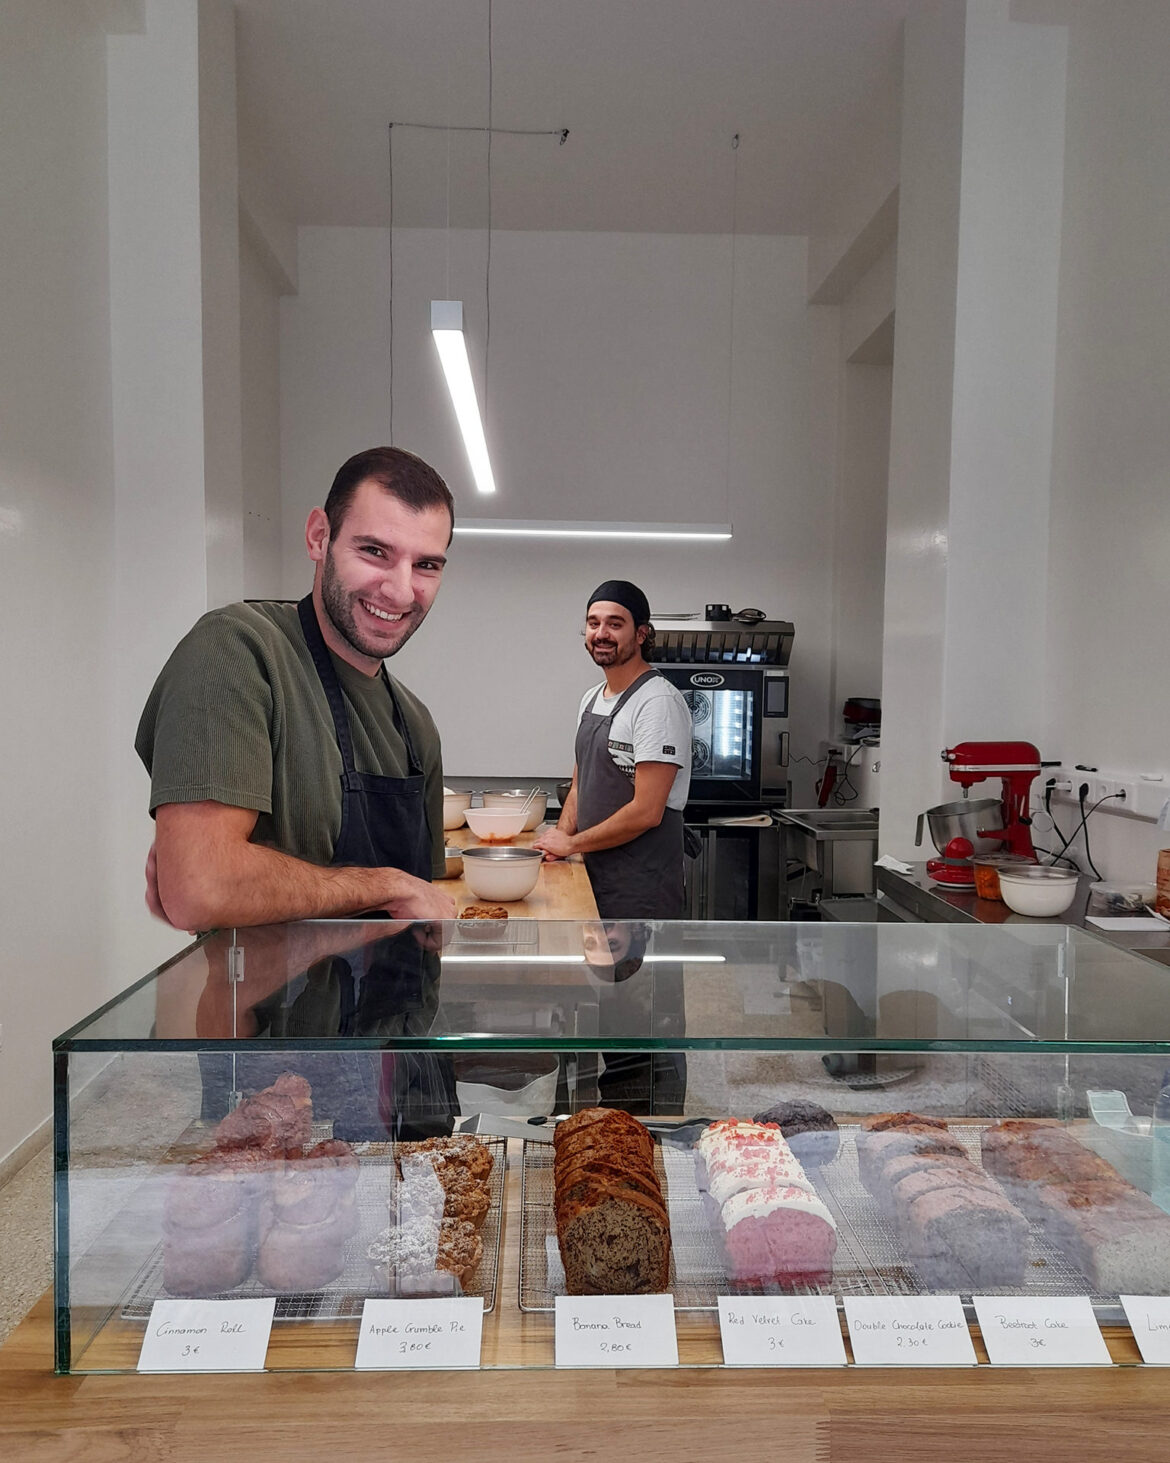 Για ζουμερό κέικ λάιμ στο Moden, ένα νέο (μίνι) ζαχαροπλαστείο στο Παγκράτι